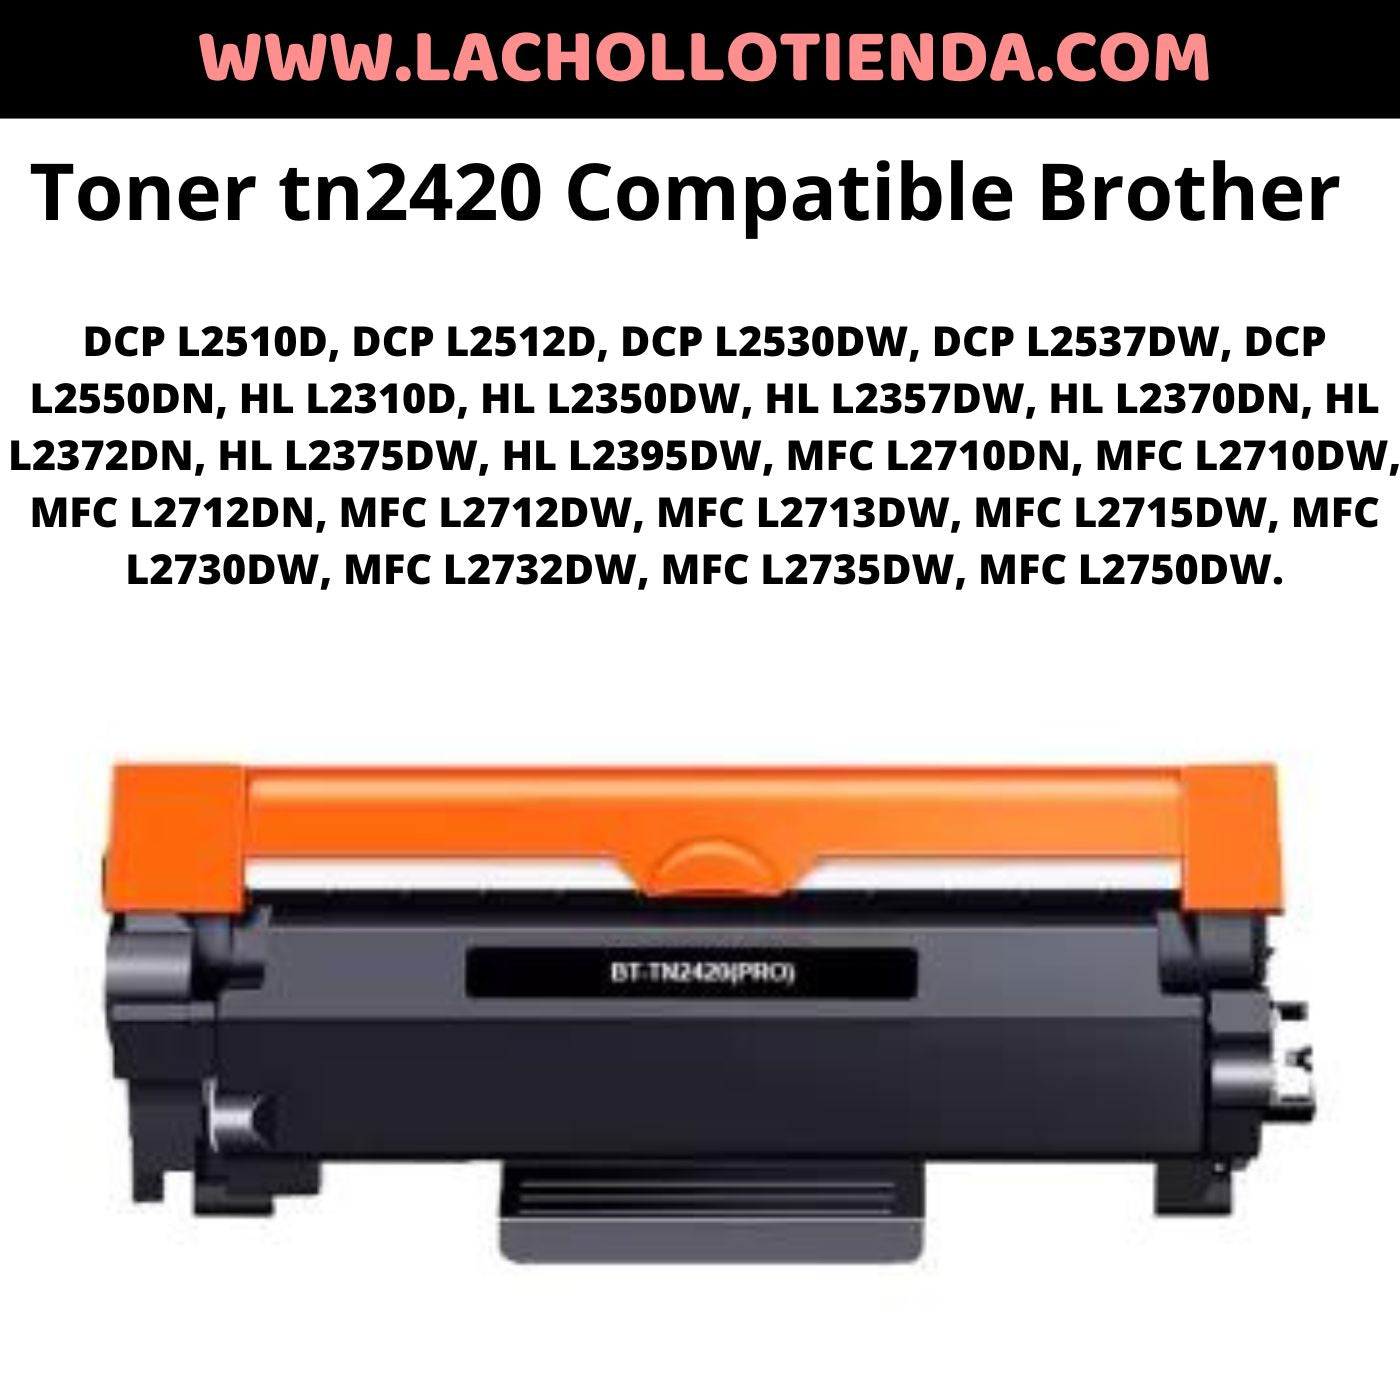 Toner TN2420 Compatible impresoras Brother – lachollotienda